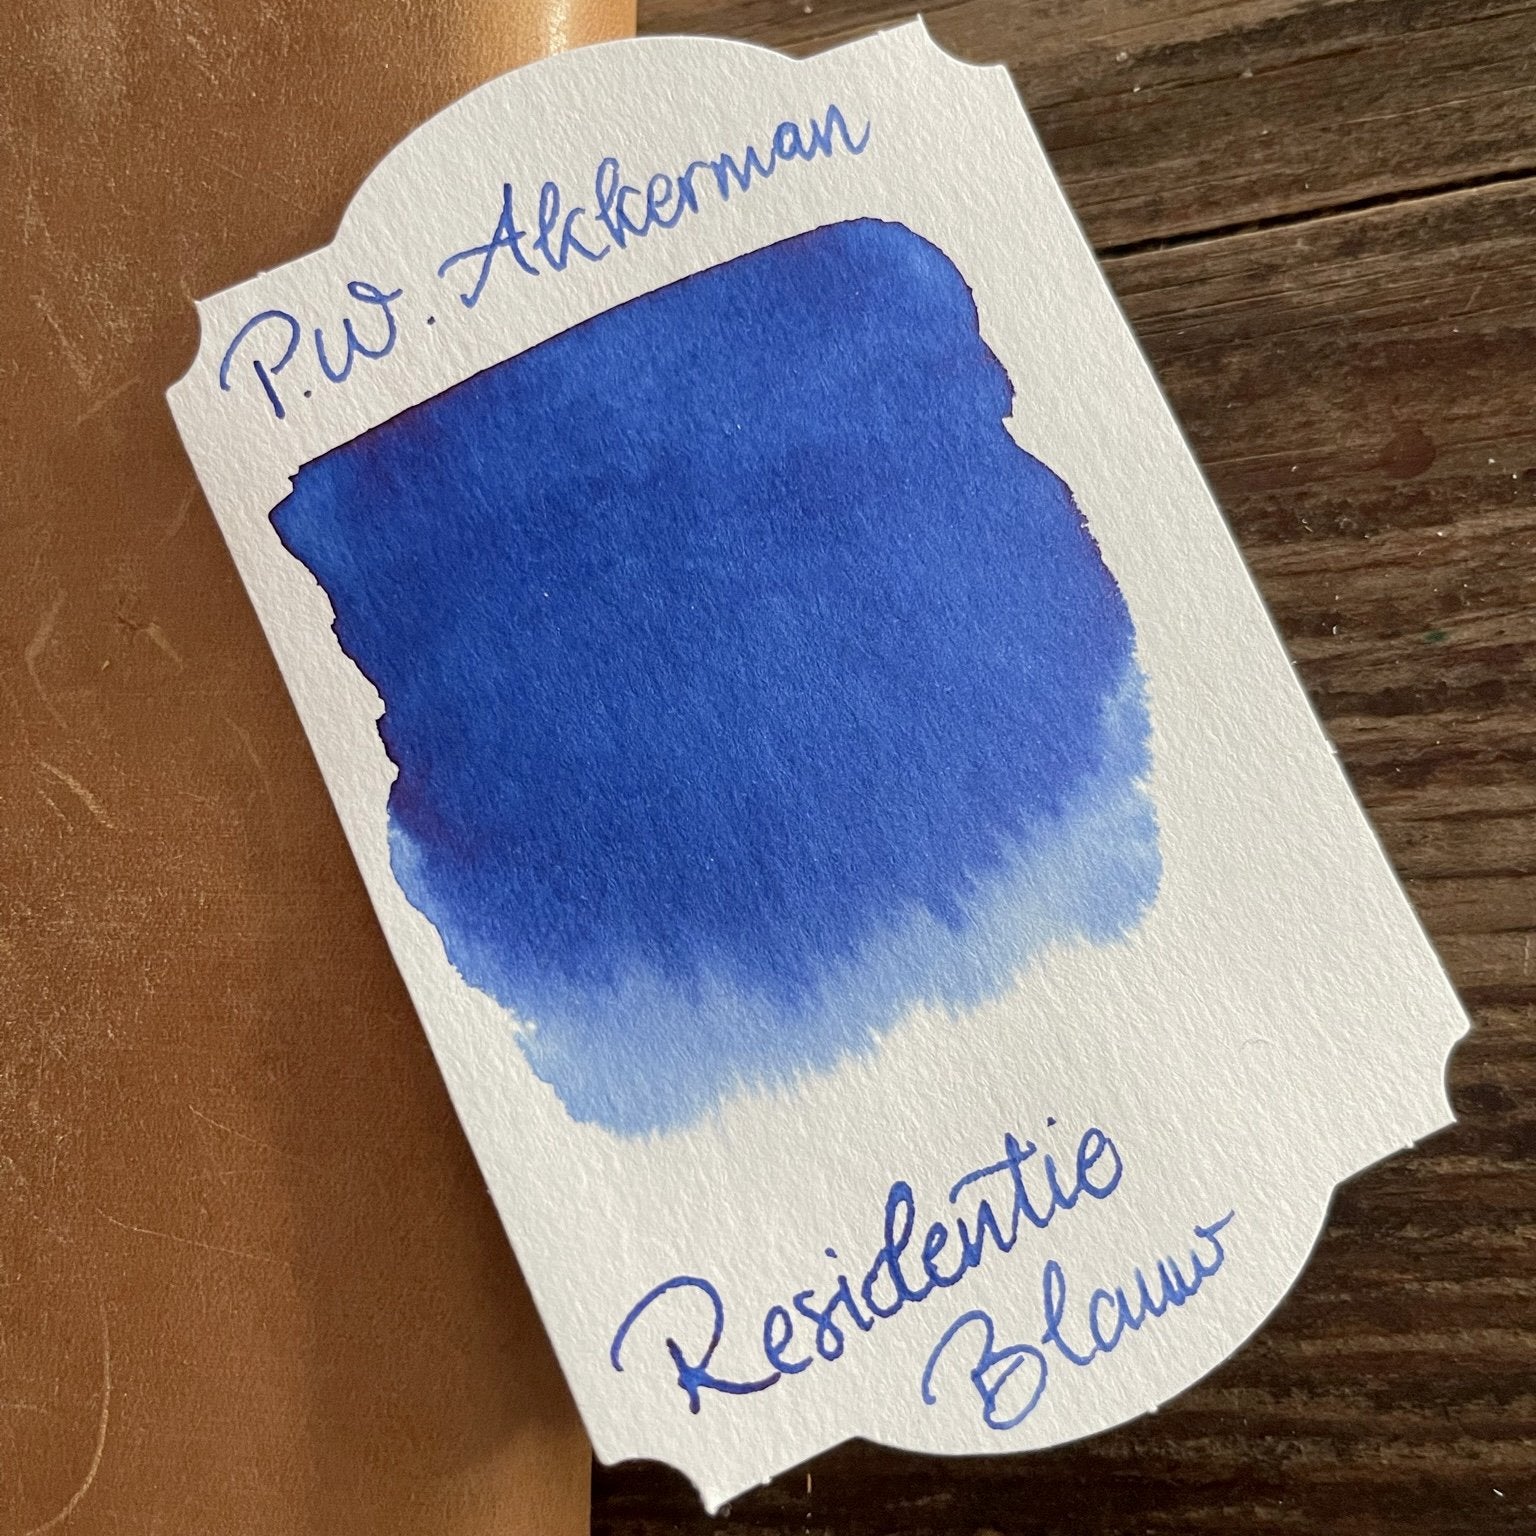 Akkerman 02 Residentie Blauw  Ink